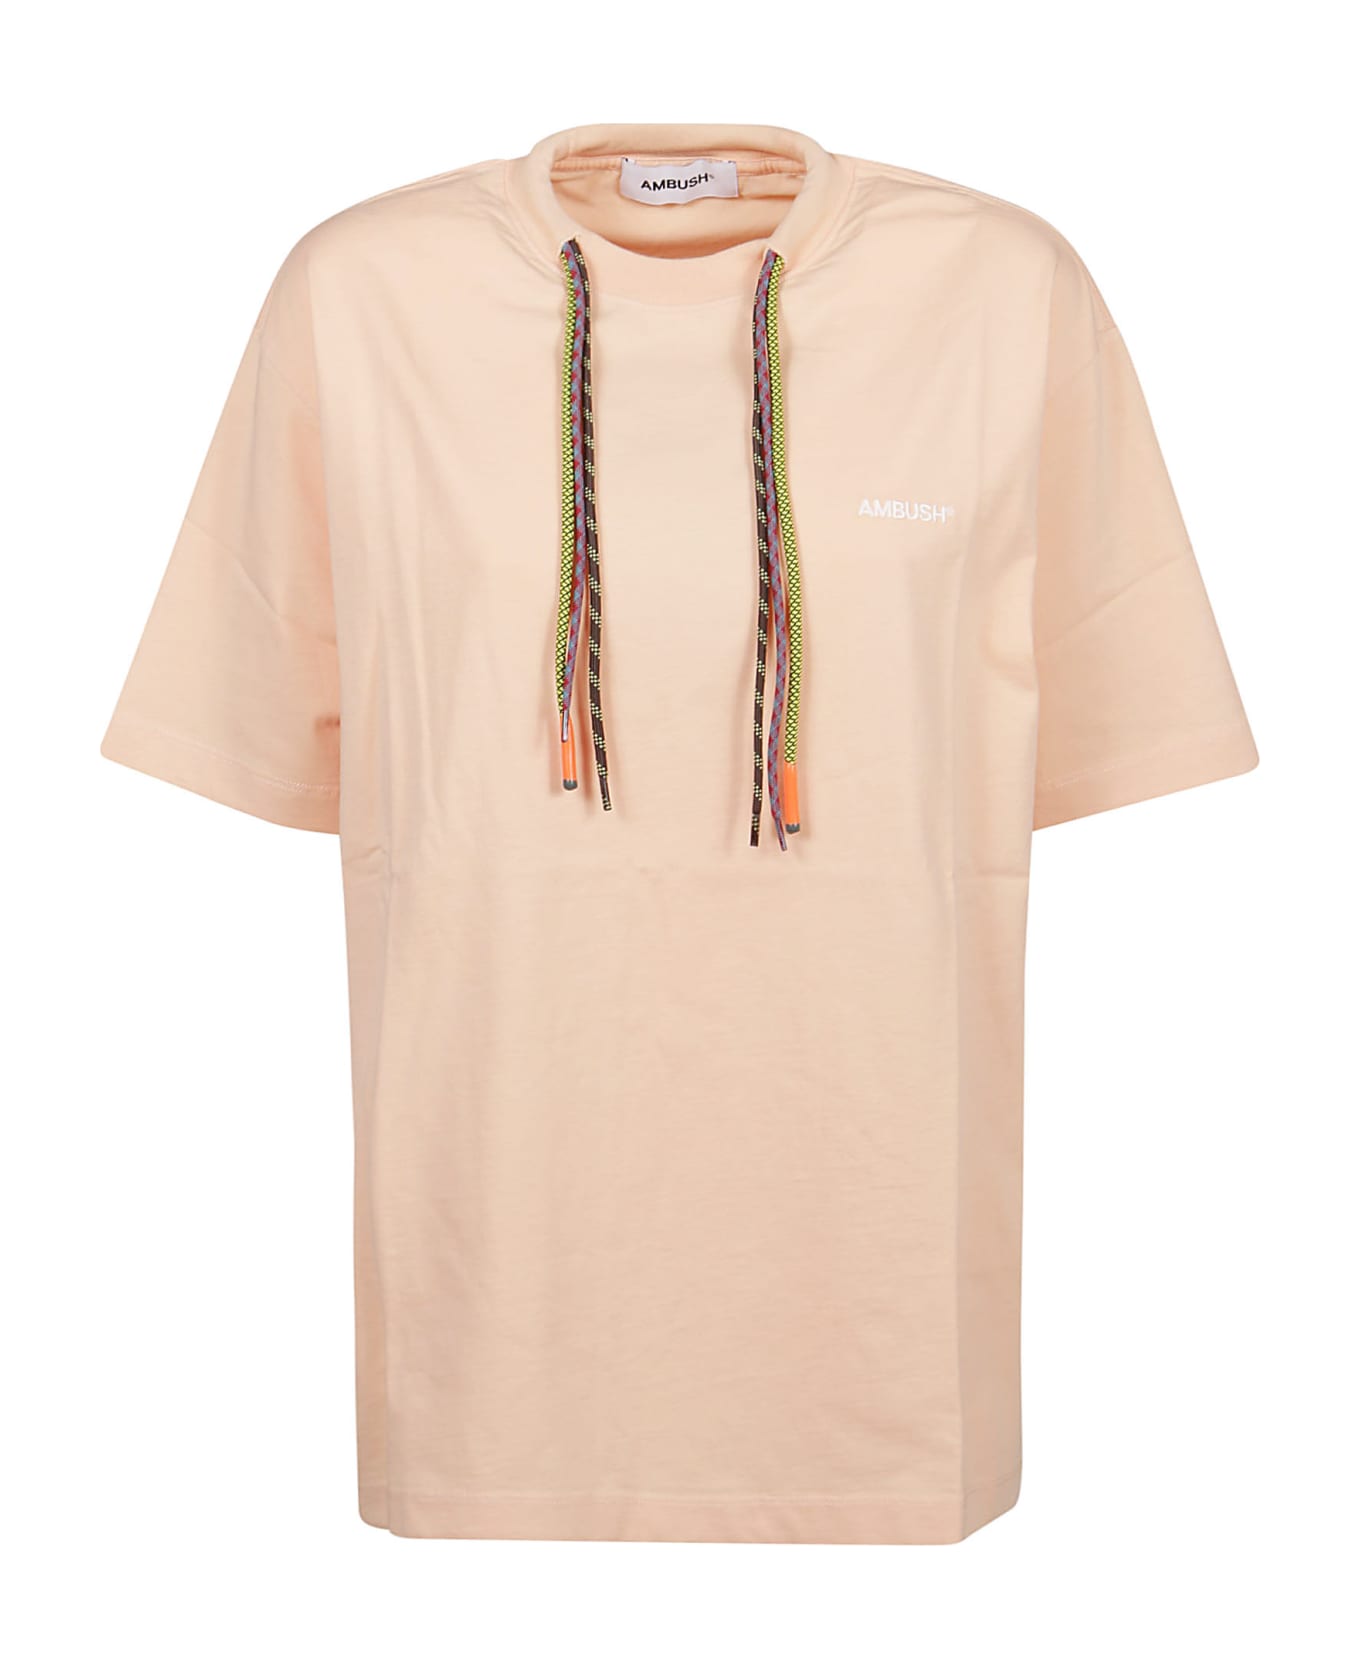 AMBUSH Multicord T-shirt - Peach Quartz Cloud Dancer